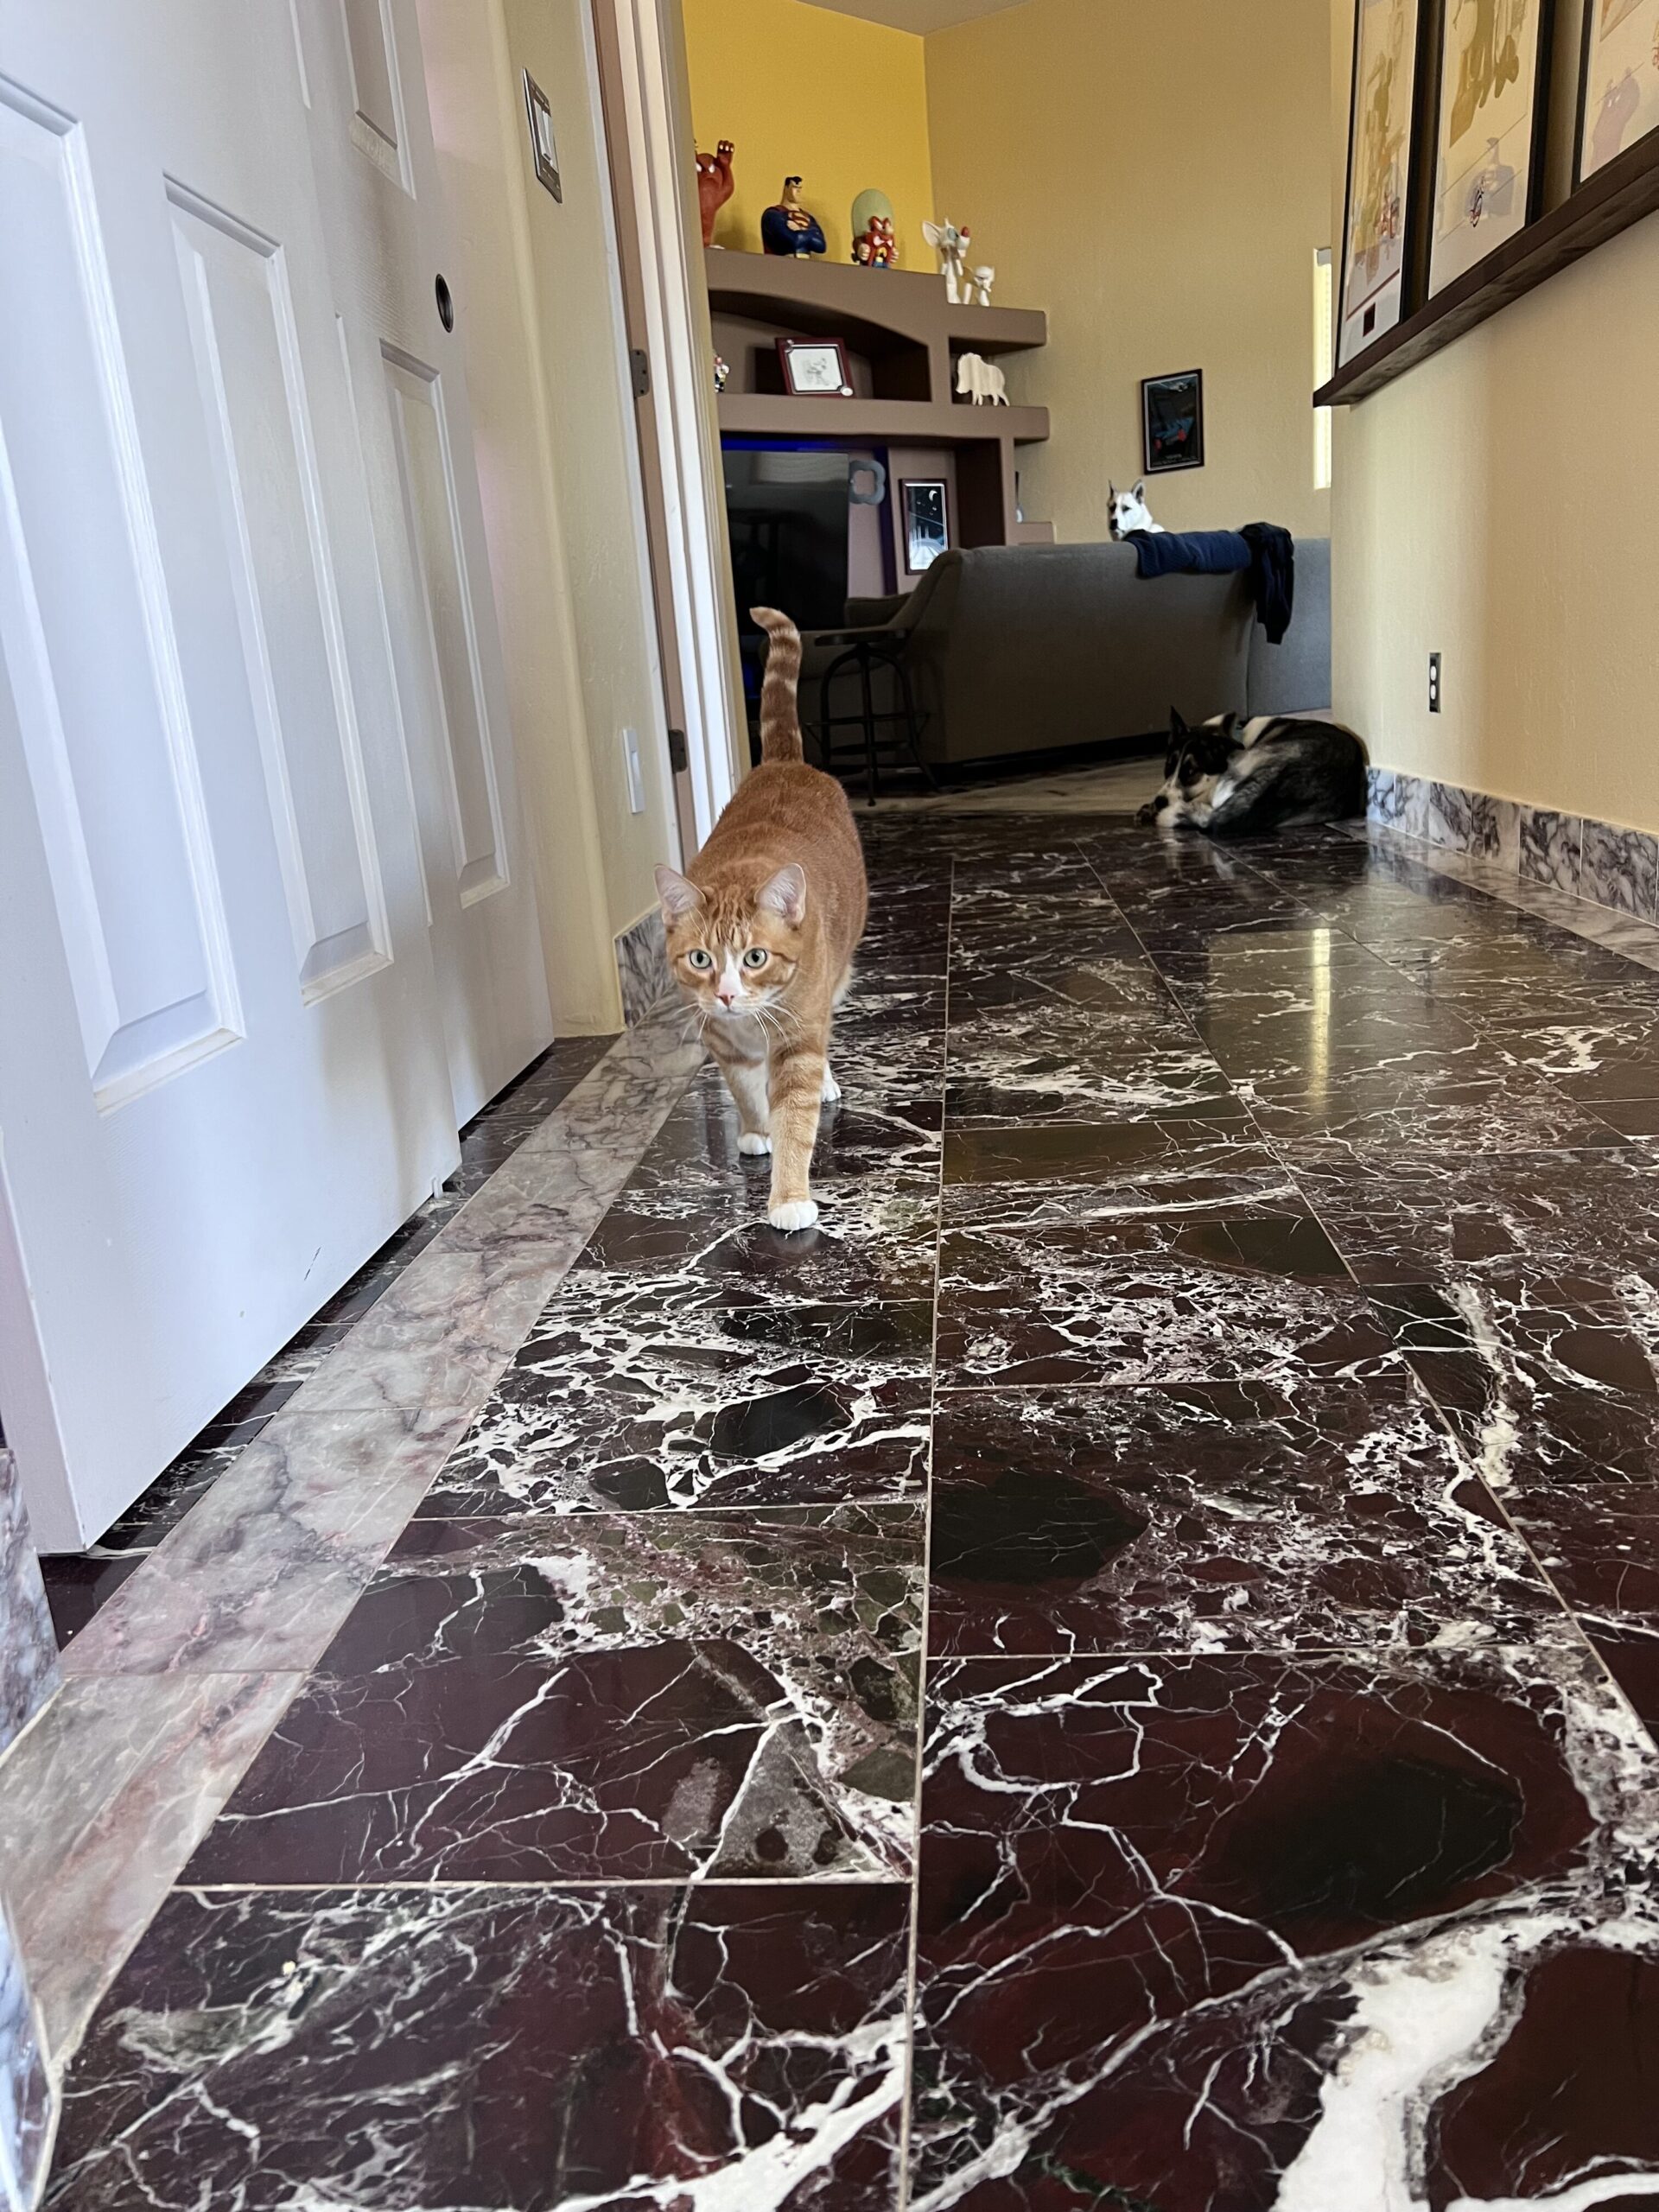 Truman, a ginger cat in the desert, walks along a hallway